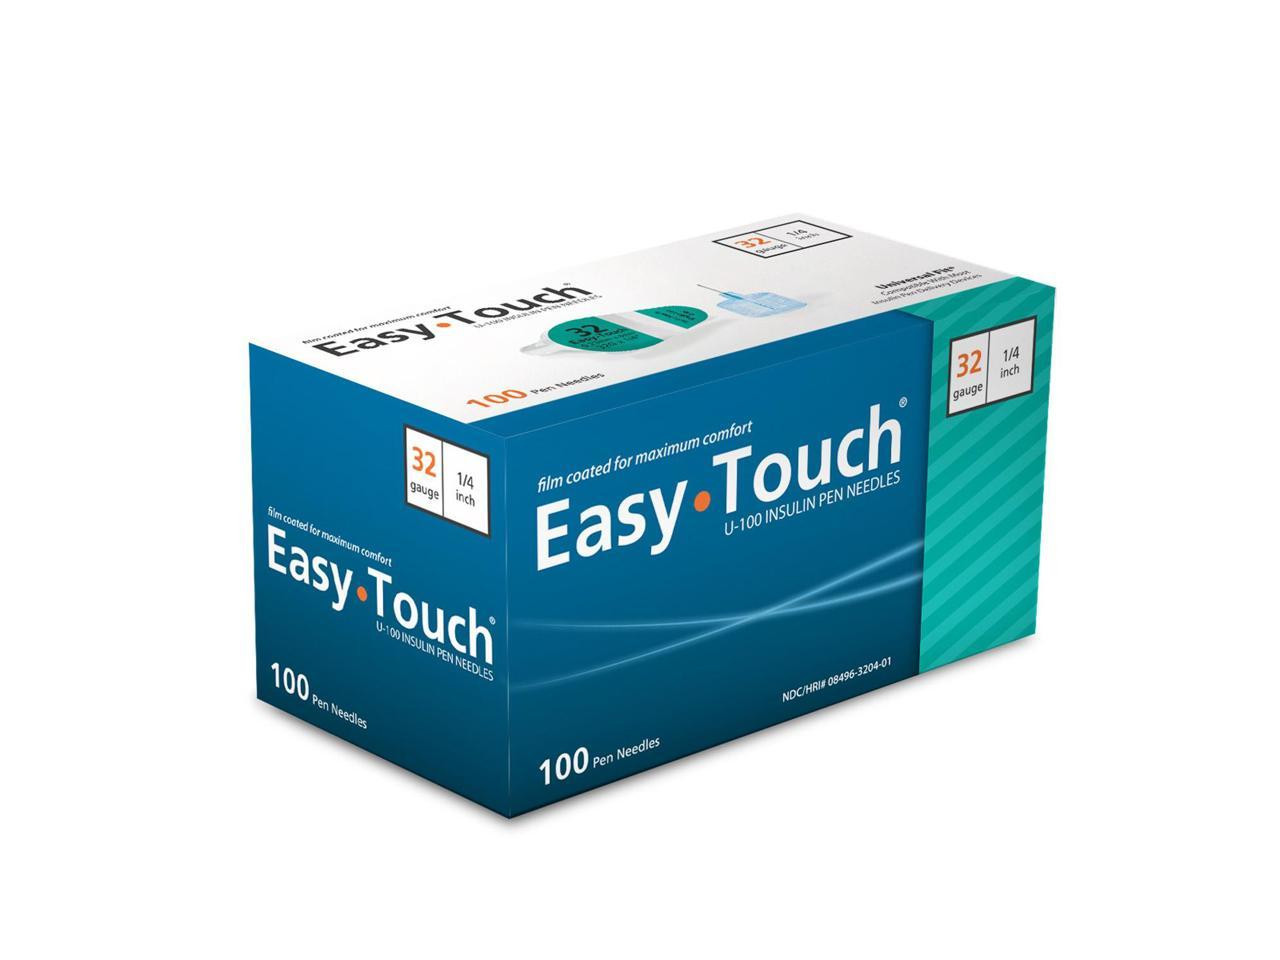 EasyTouch®Pen Needles - 32G